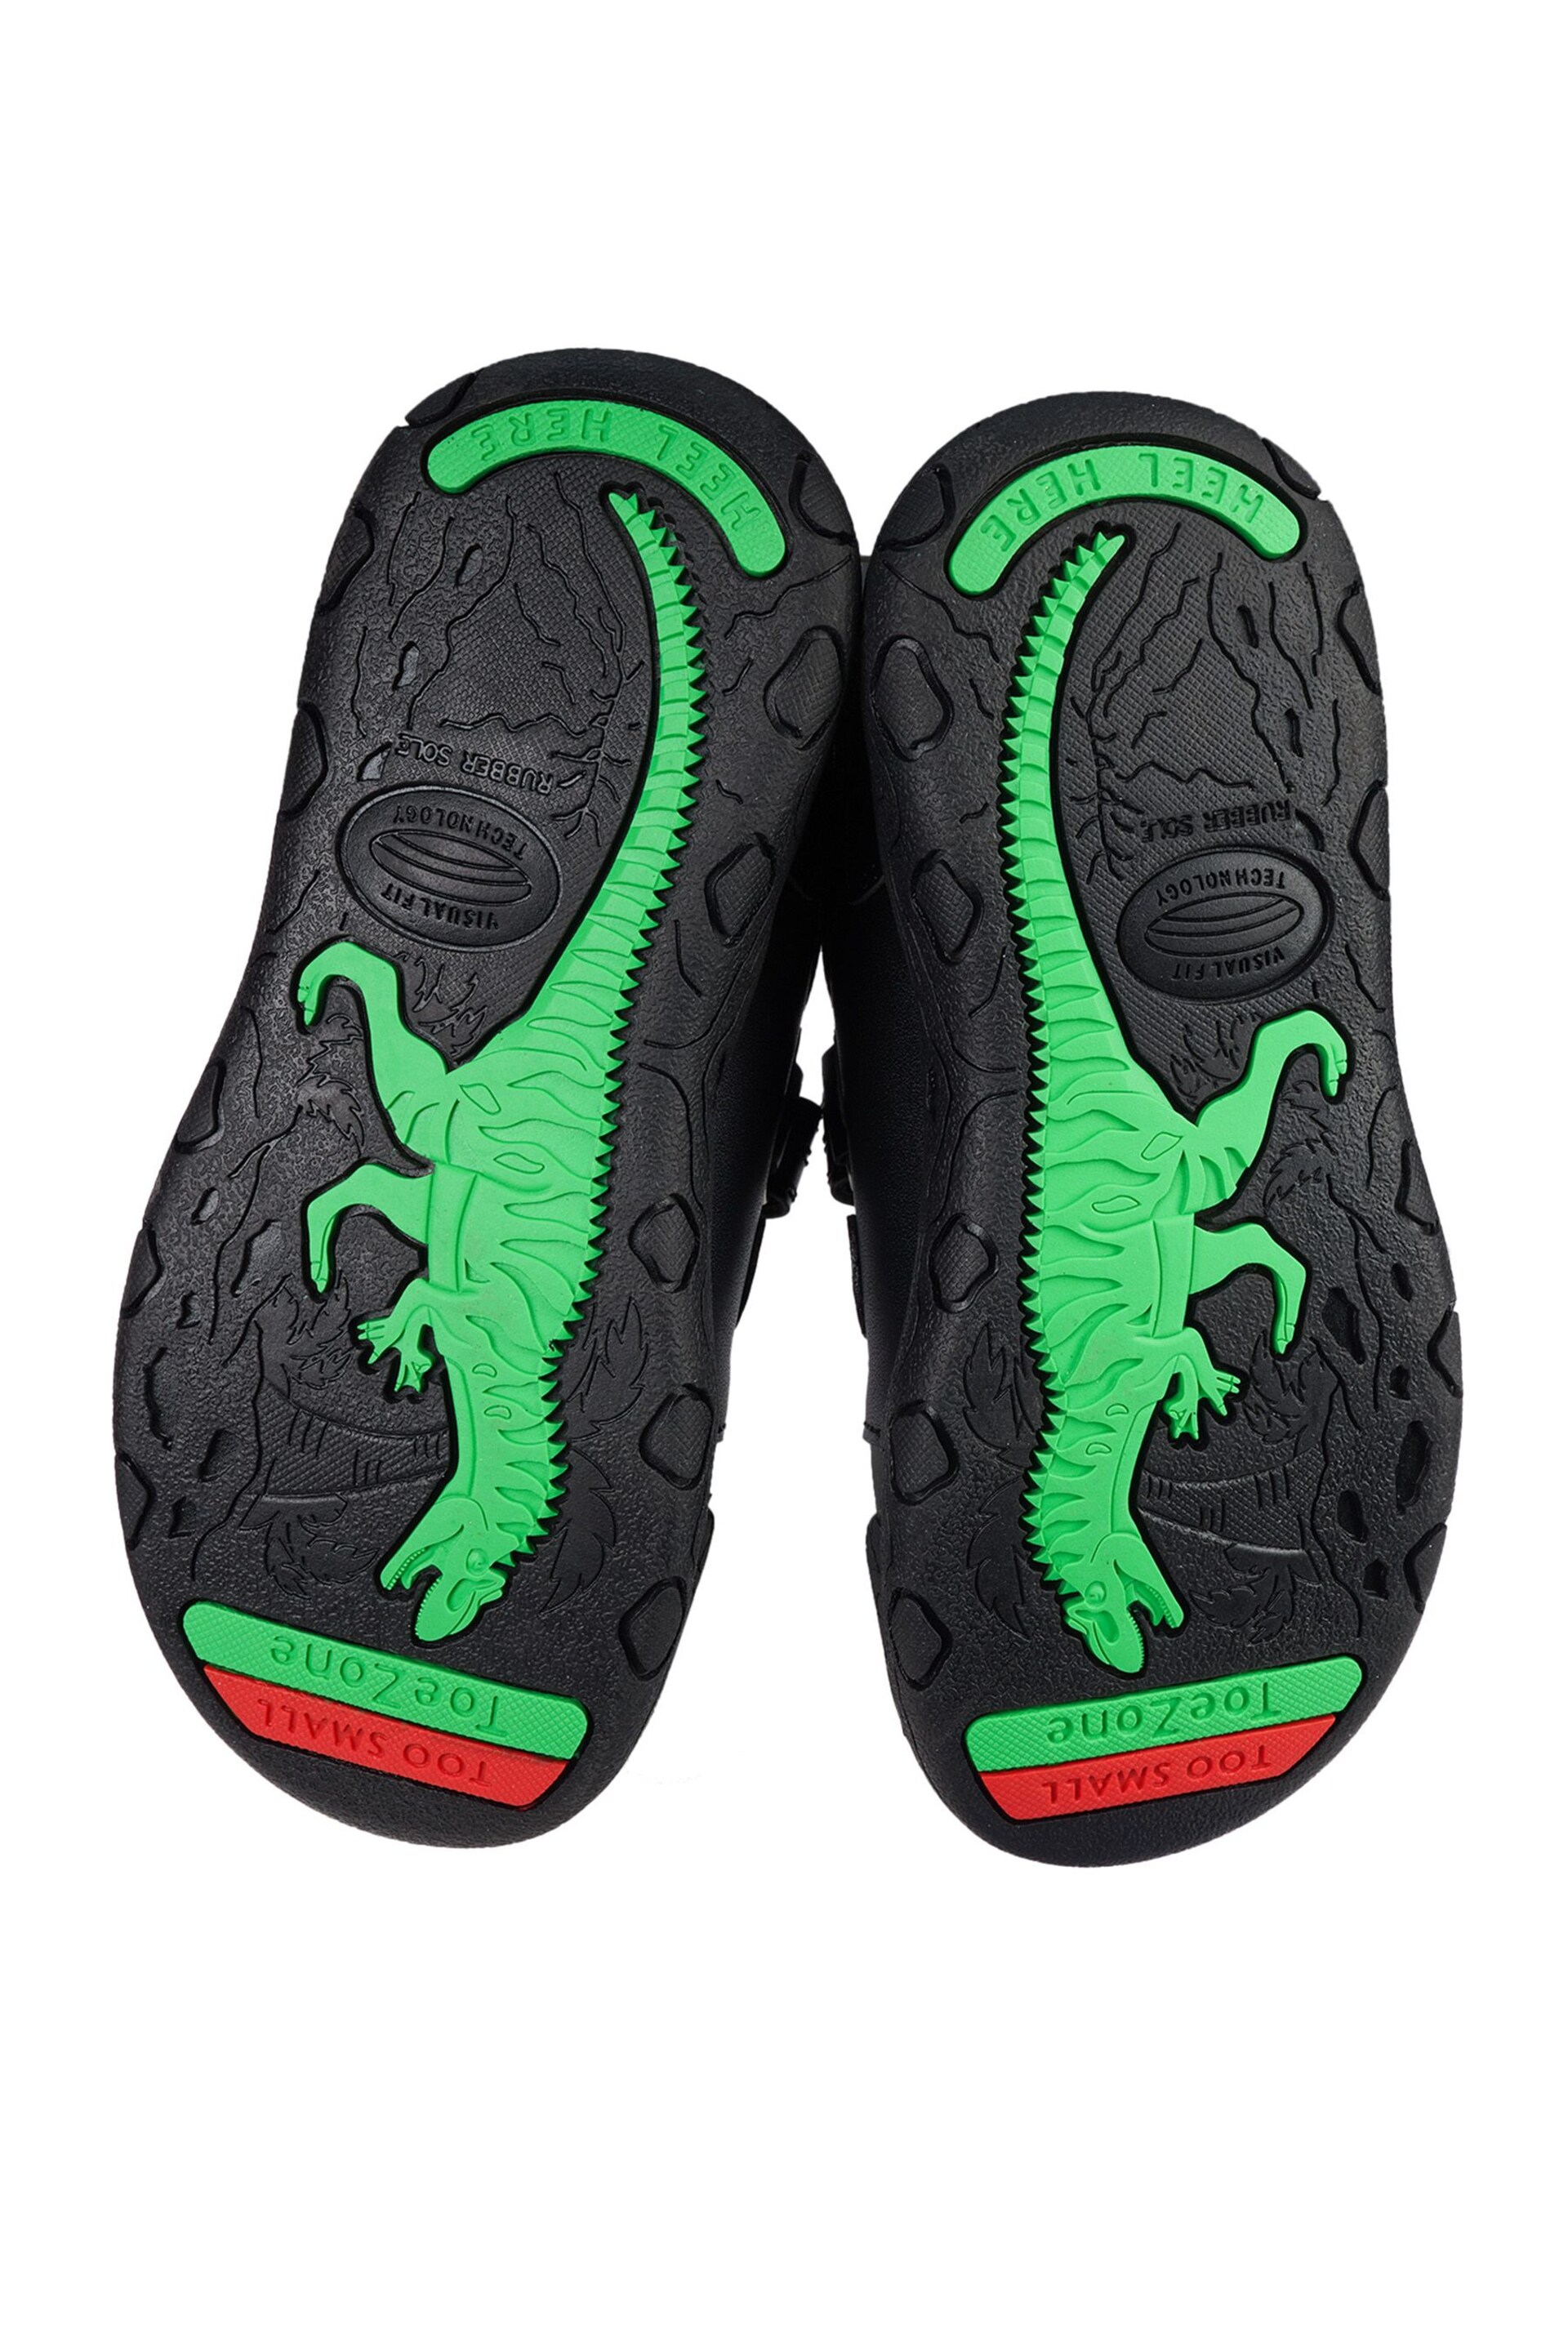 Toezone Chase Black Dinosaur Shoes - Image 5 of 6